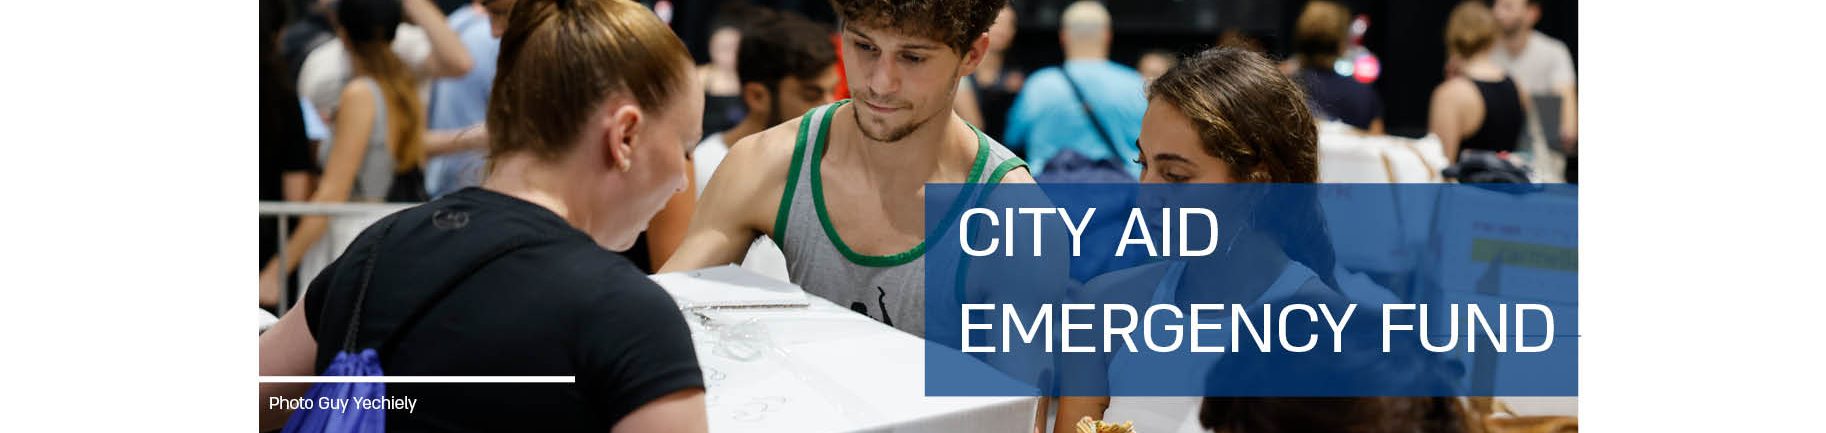 City Aid Emergency Fund